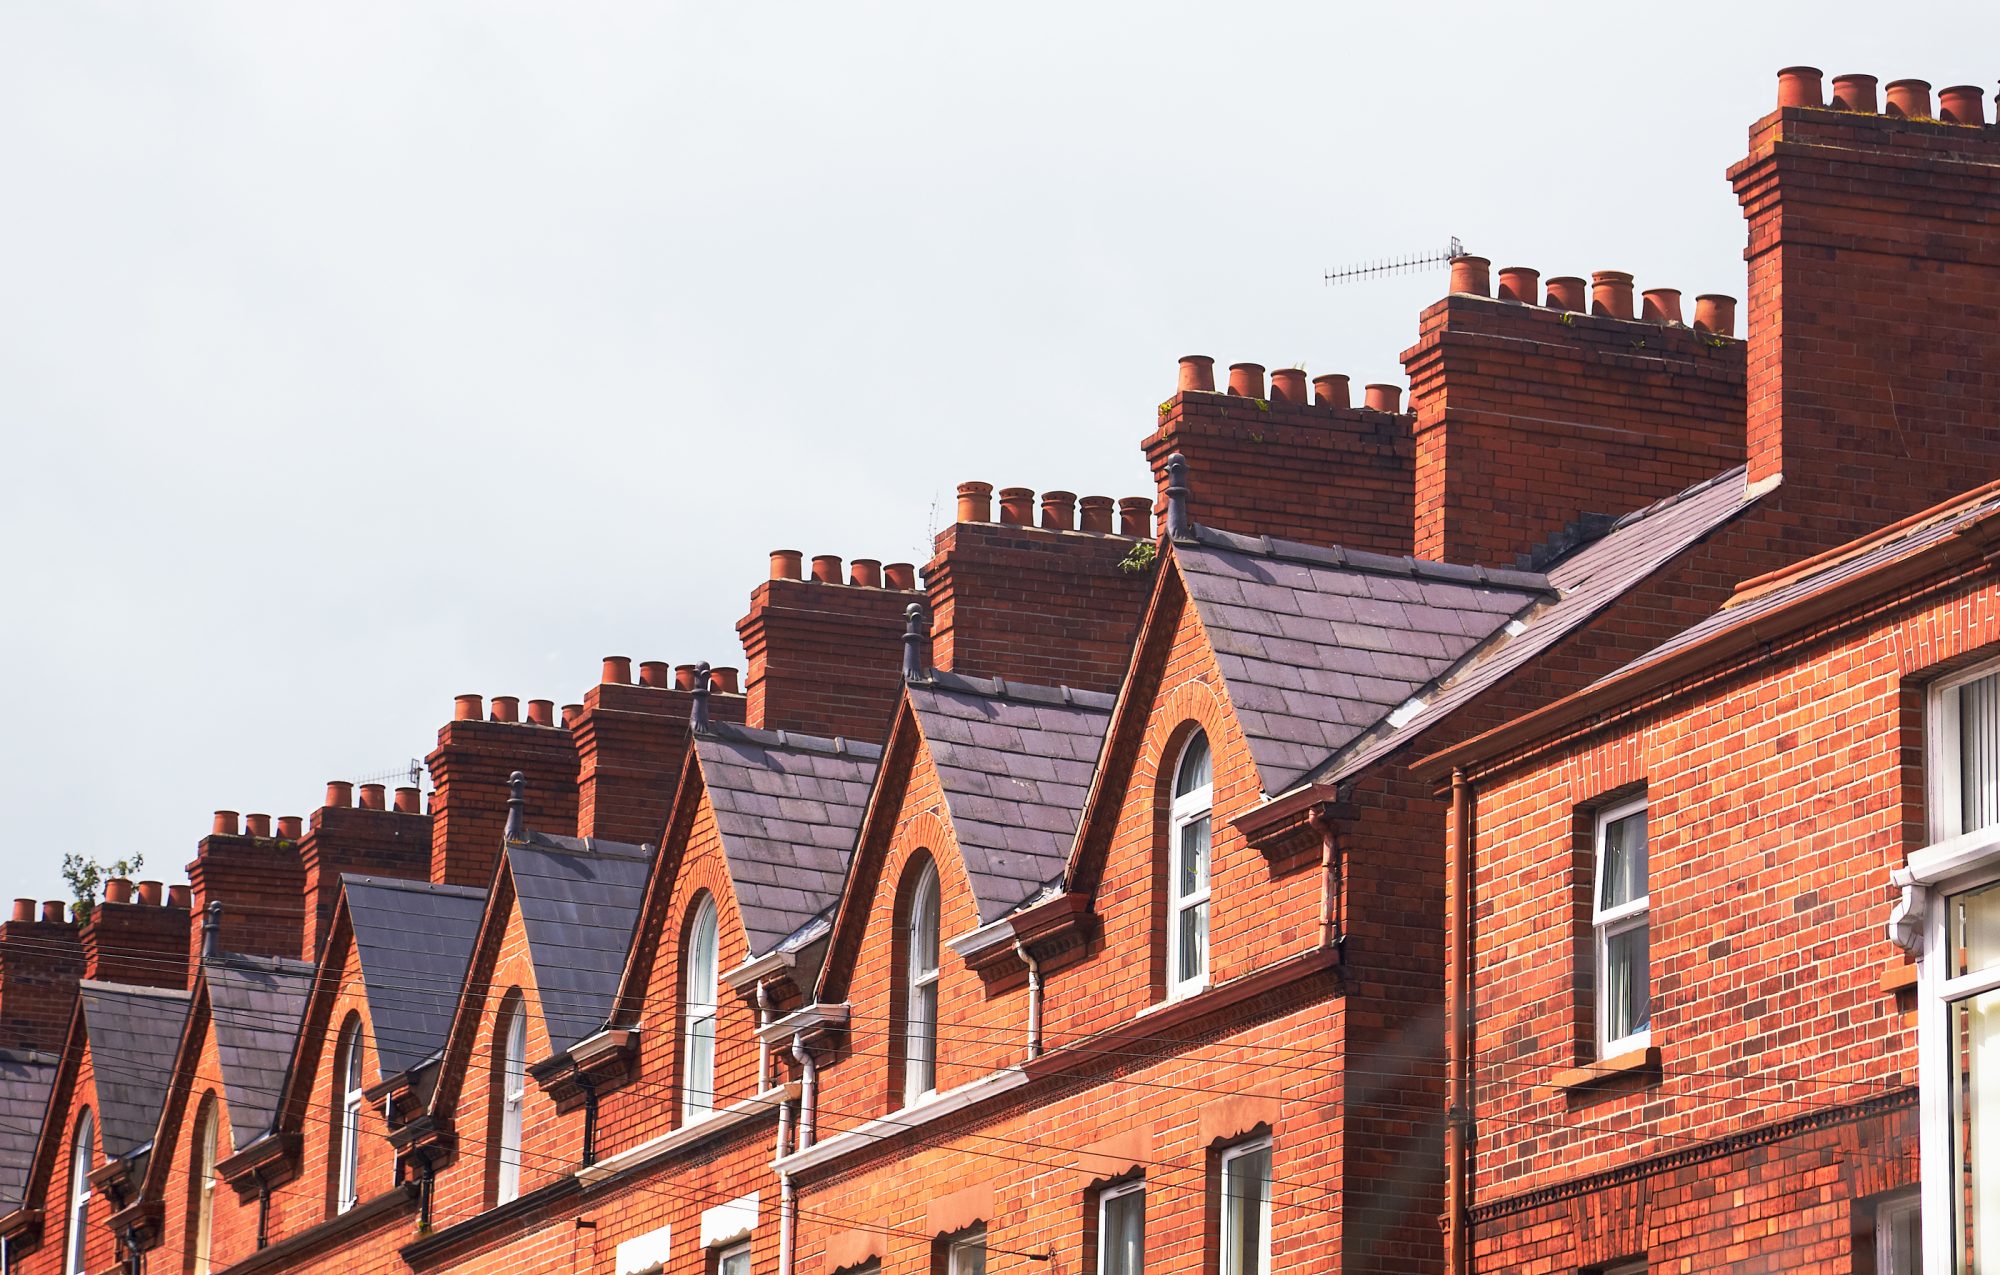 Belfast Roofs 1